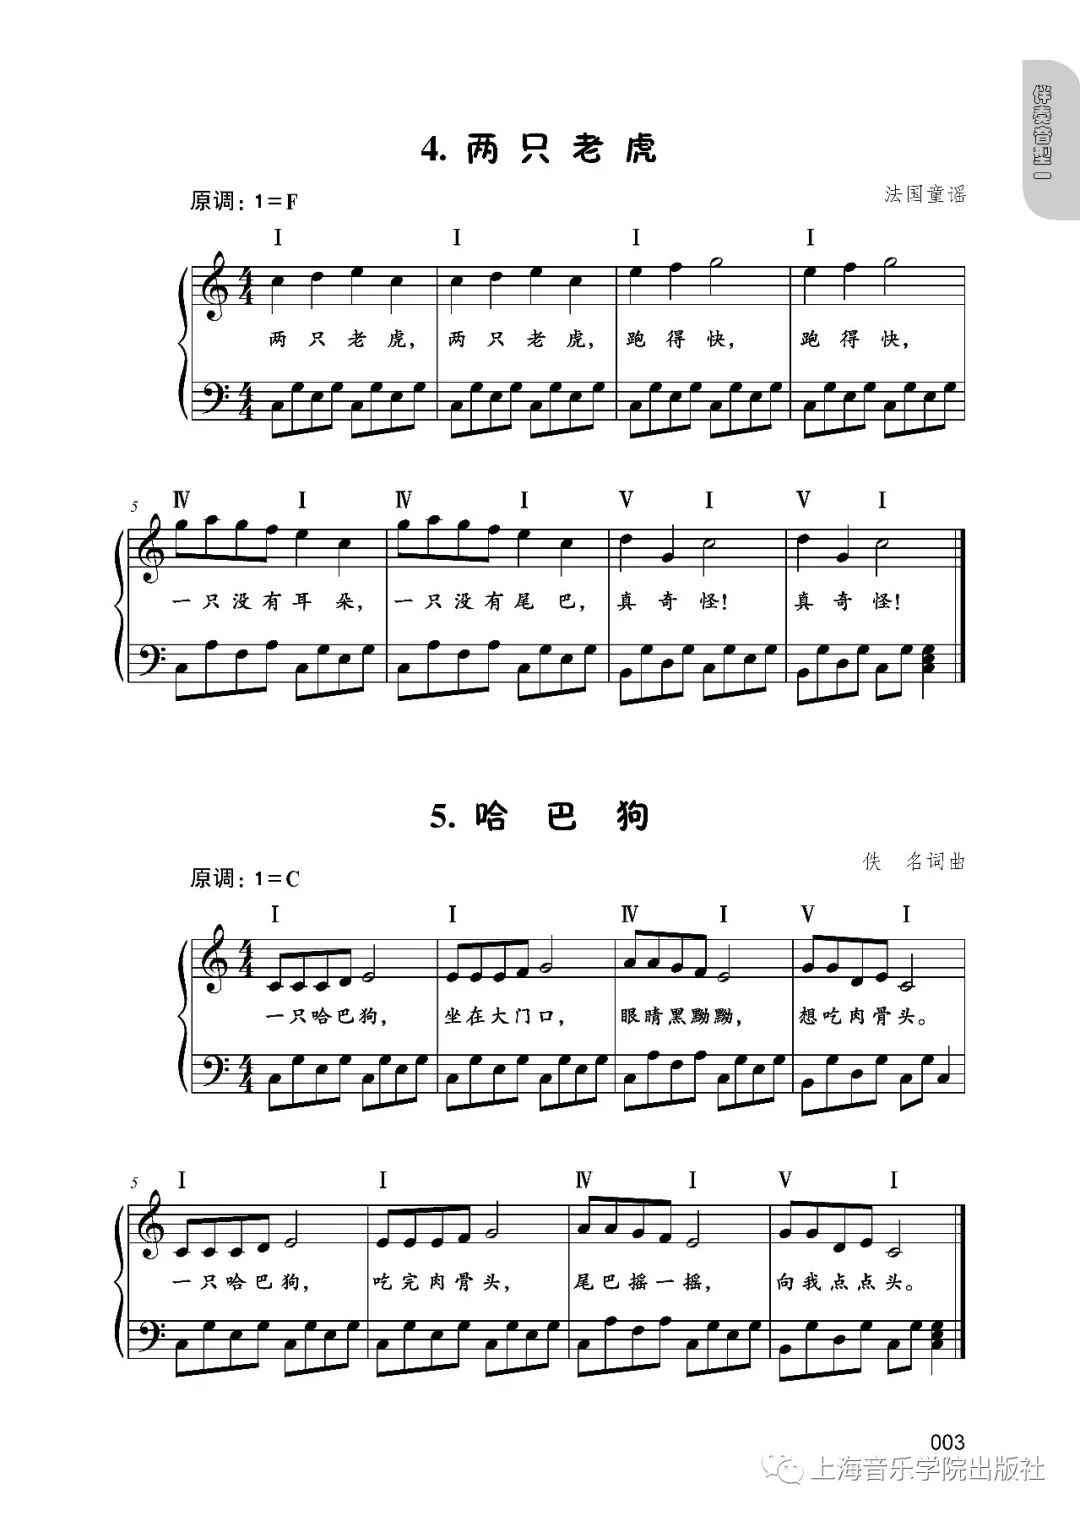 【新书推介】陈欣编配《儿童歌曲钢琴伴奏曲集》(五线谱版)